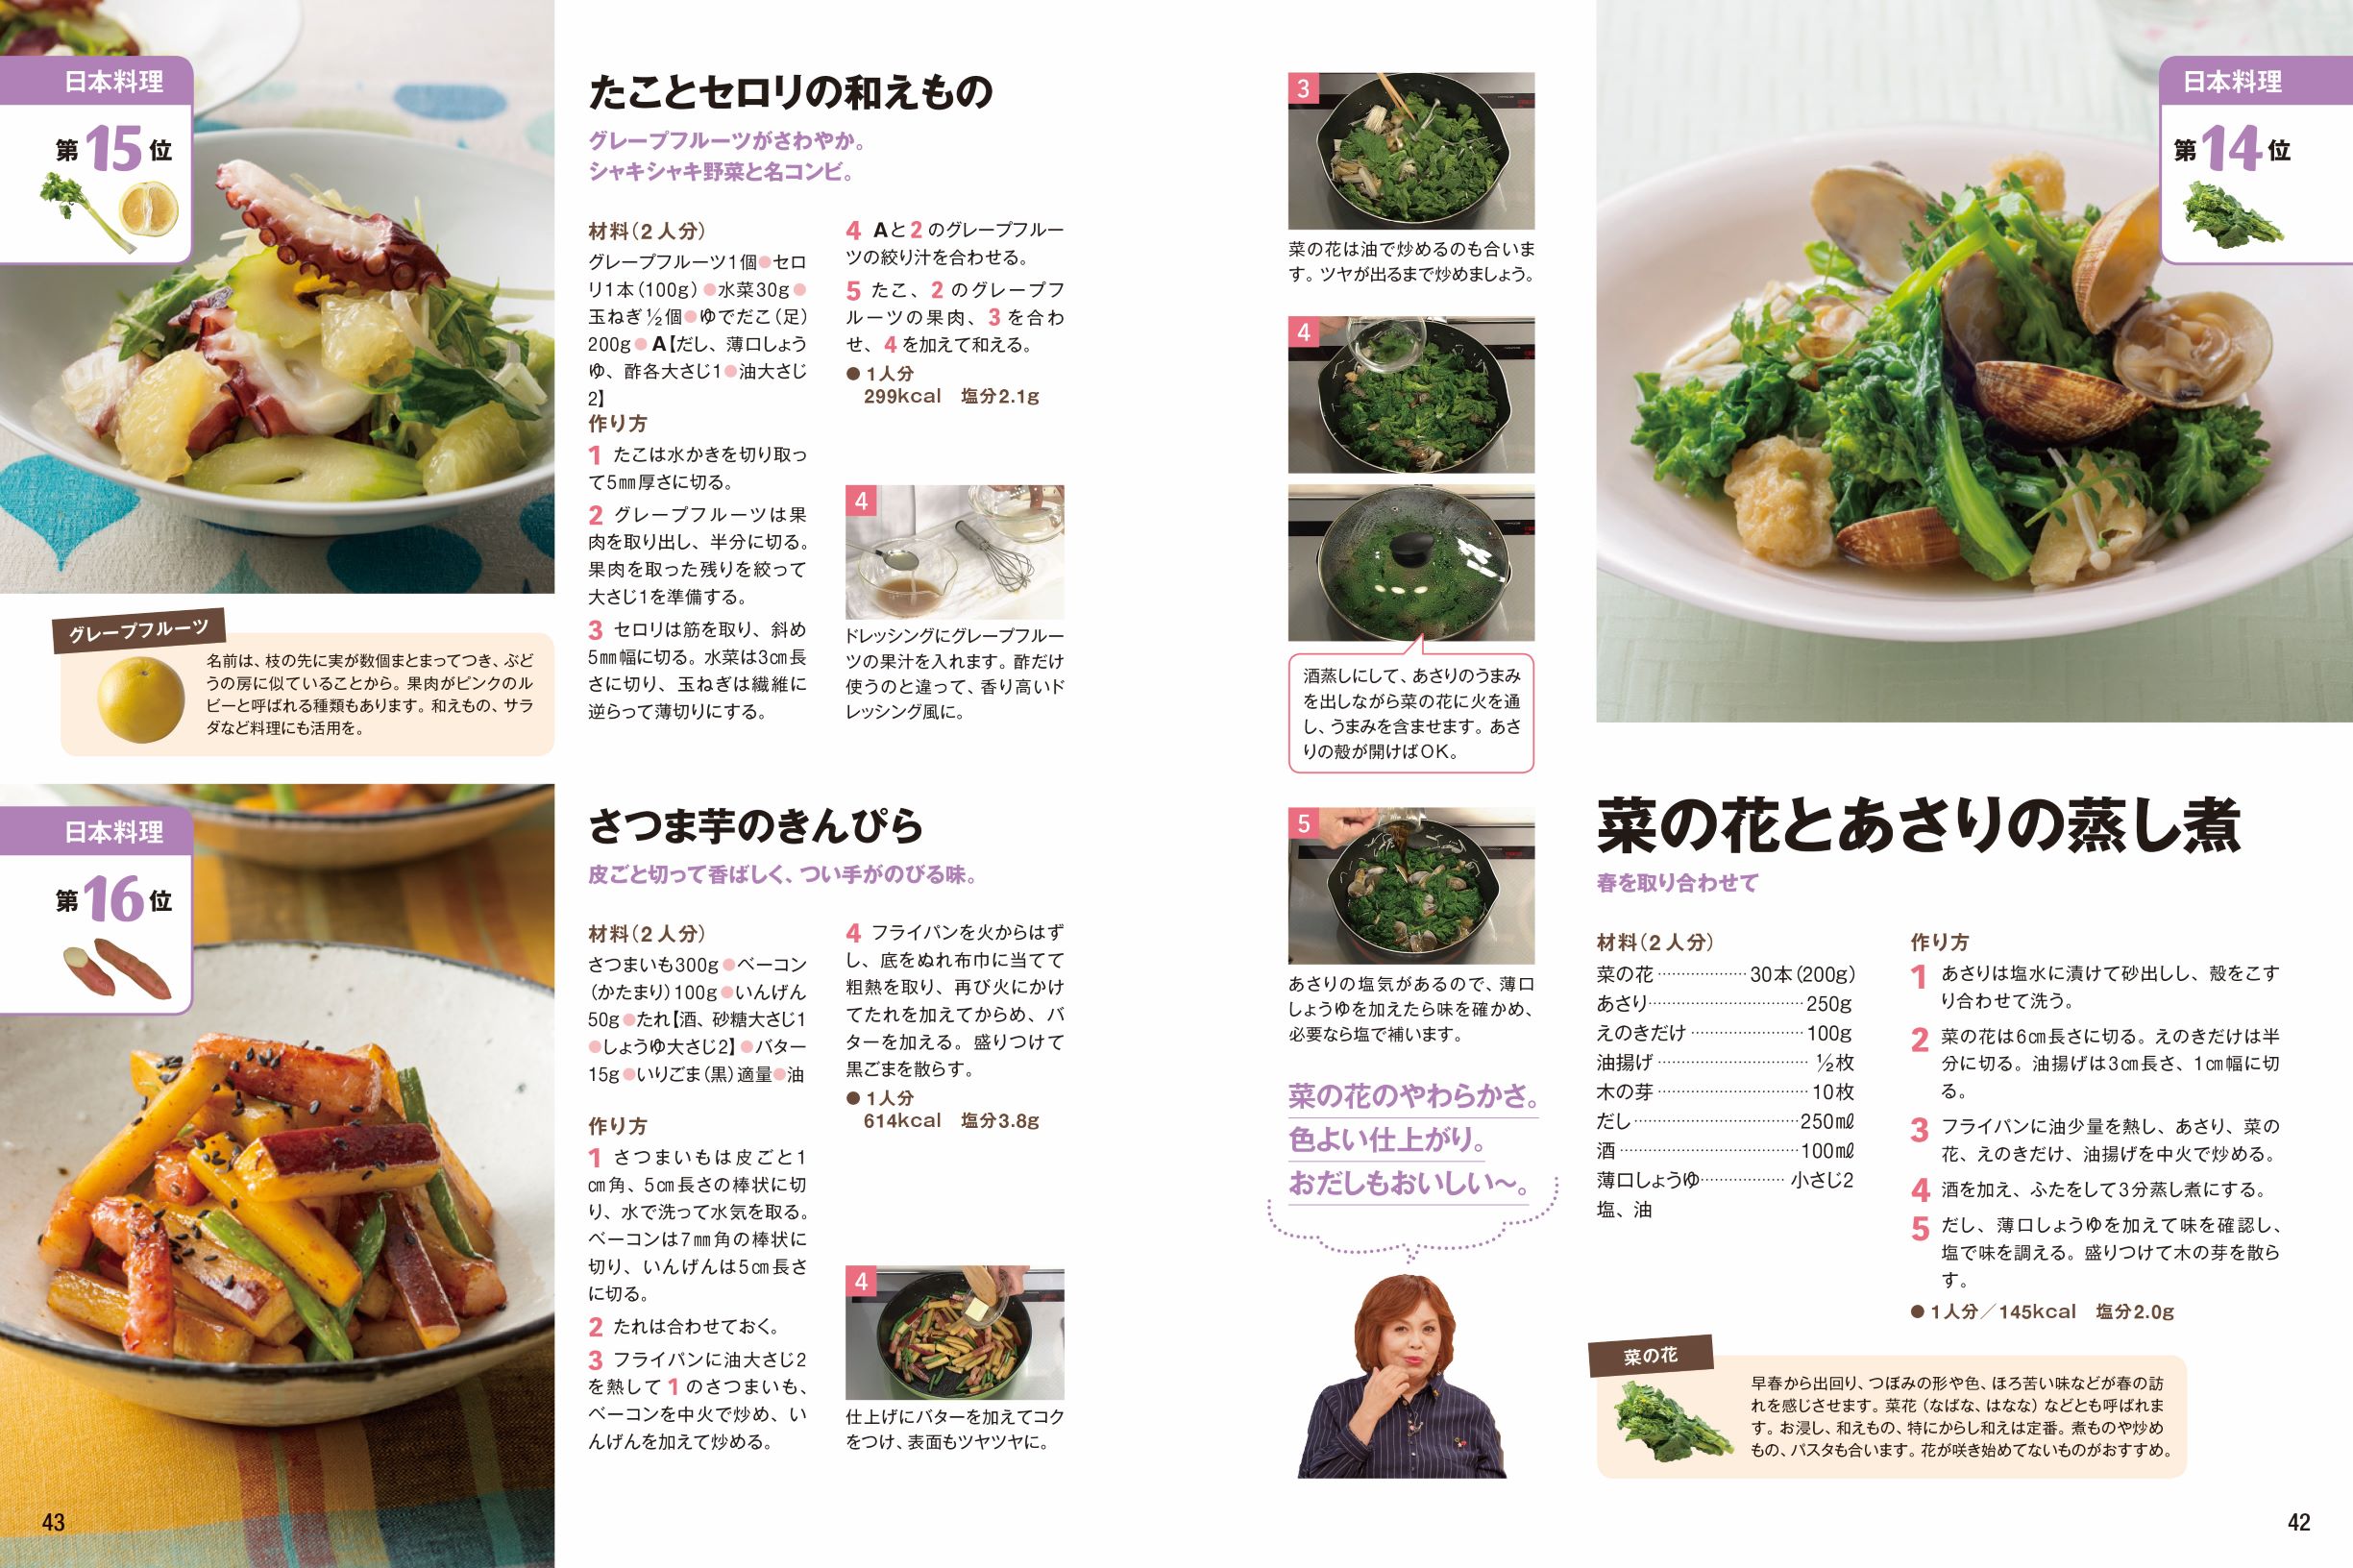 上沼恵美子が9年間おしゃべりしながら紹介した2 300レシピで一番おいしかったのは 上沼恵美子のおしゃべりクッキング 日本一の絶品おかず 野菜のおかず編 J Cast Bookウォッチ